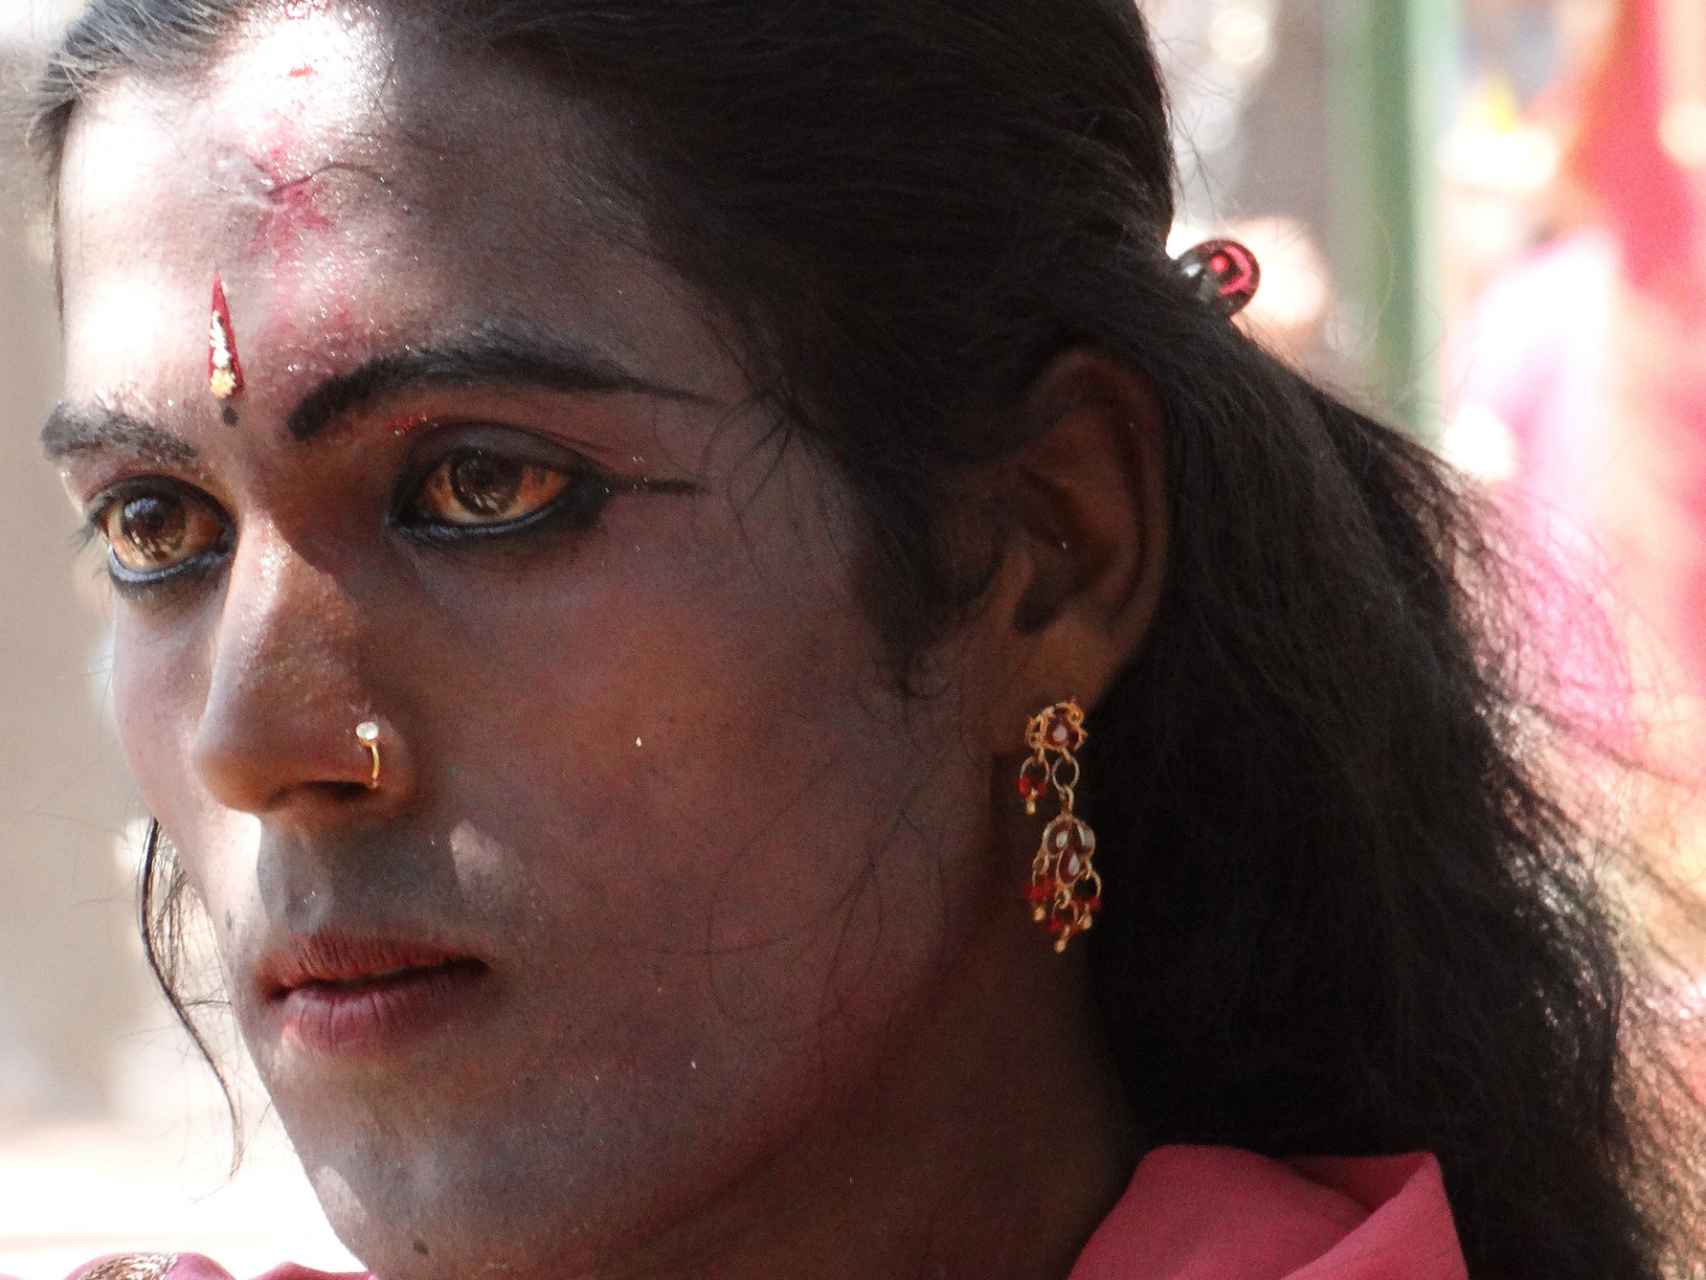 Retrato de un hijra en su vida diaria.